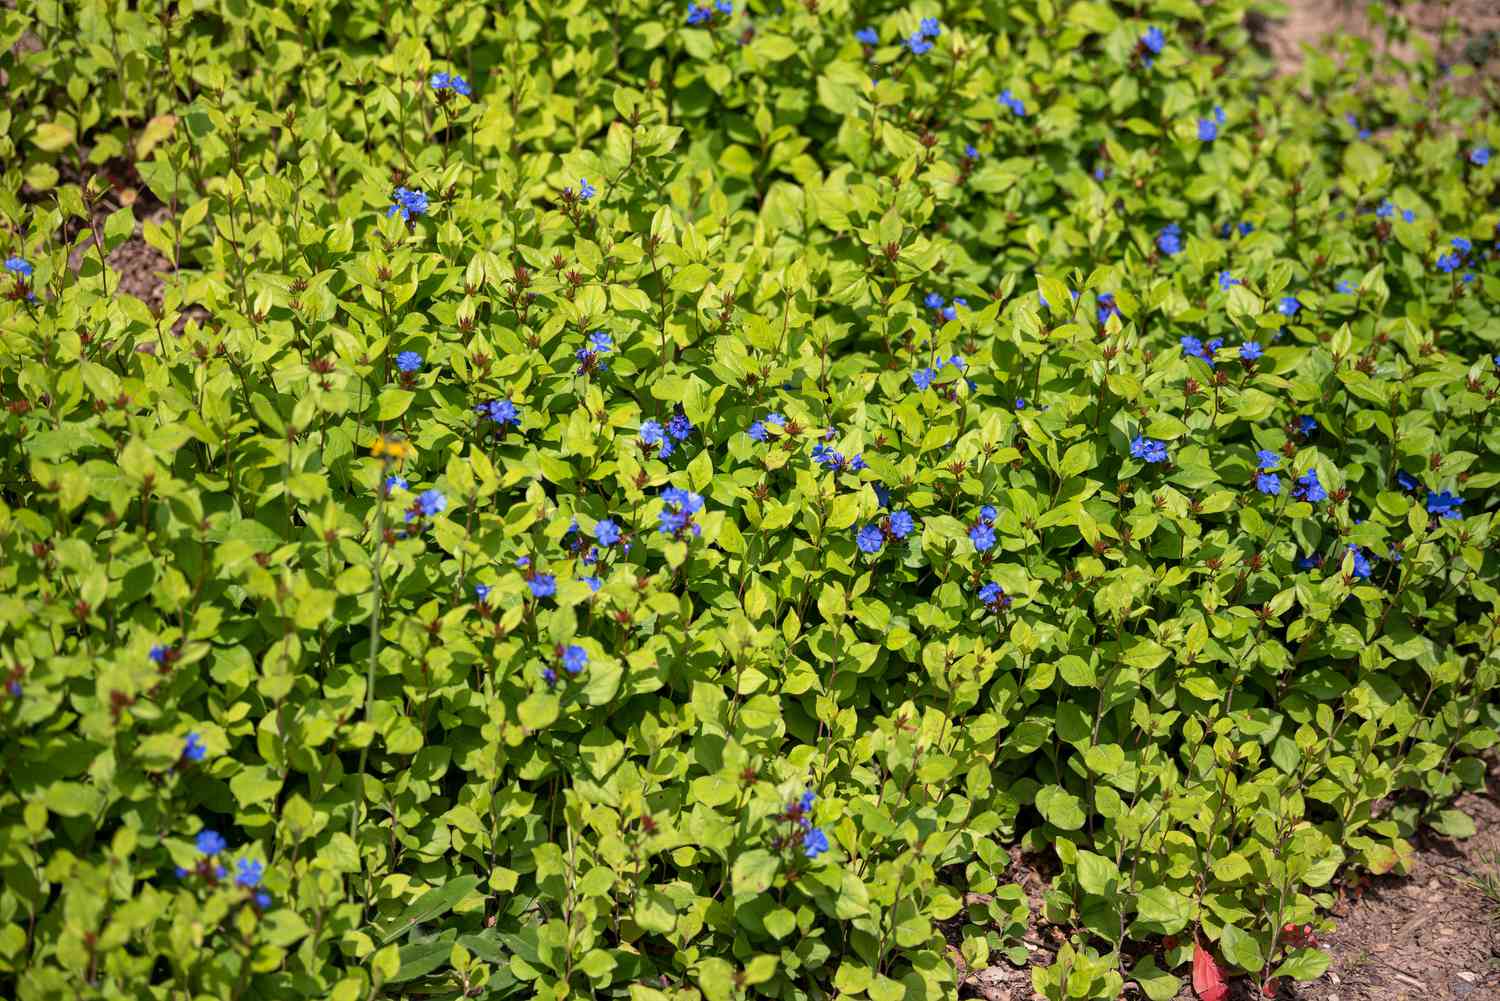 Bleikrautpflanze mit dichten gelb-grünen Blättern und kleinen blauen Blüten